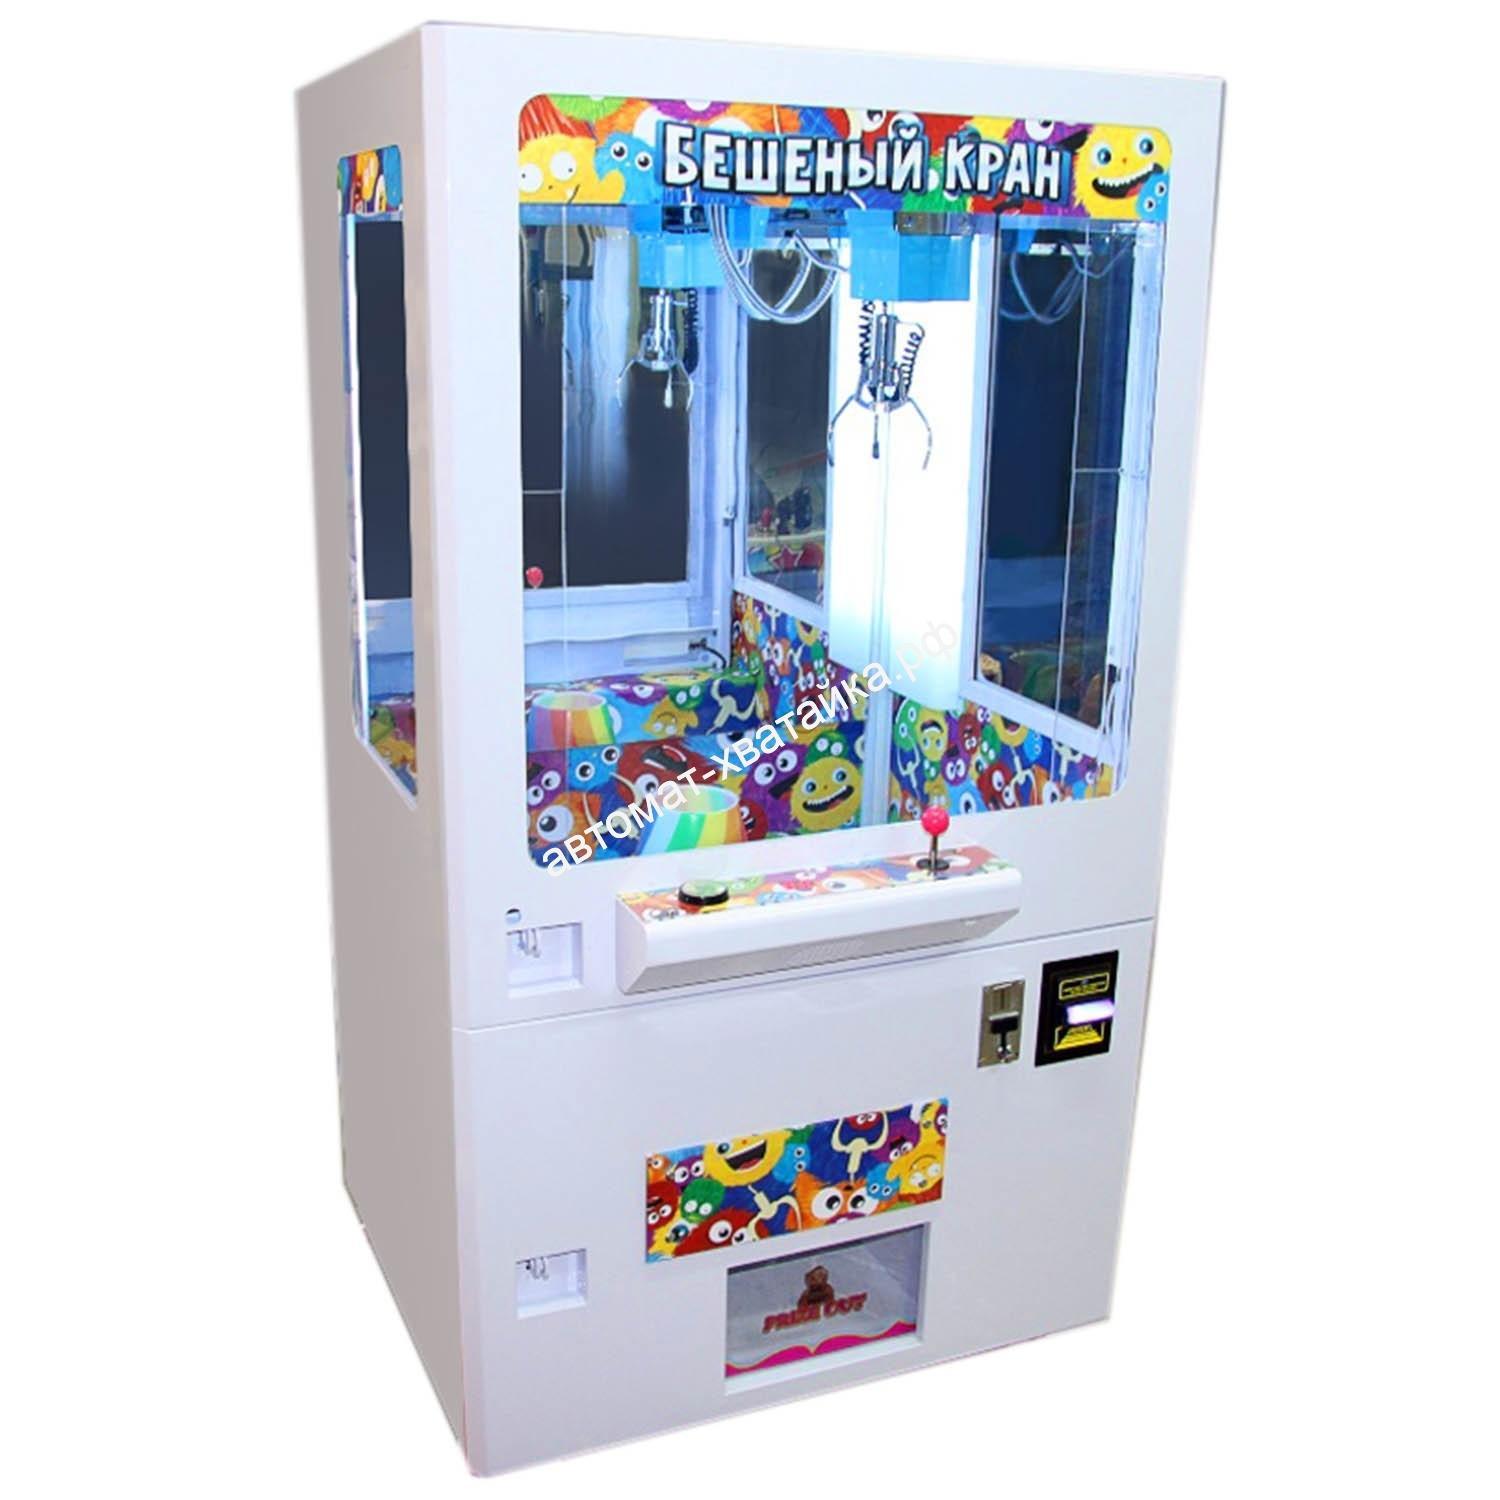 Купить игровые автоматы для развлекательных центров из китая казино онлайн официальный сайт 777